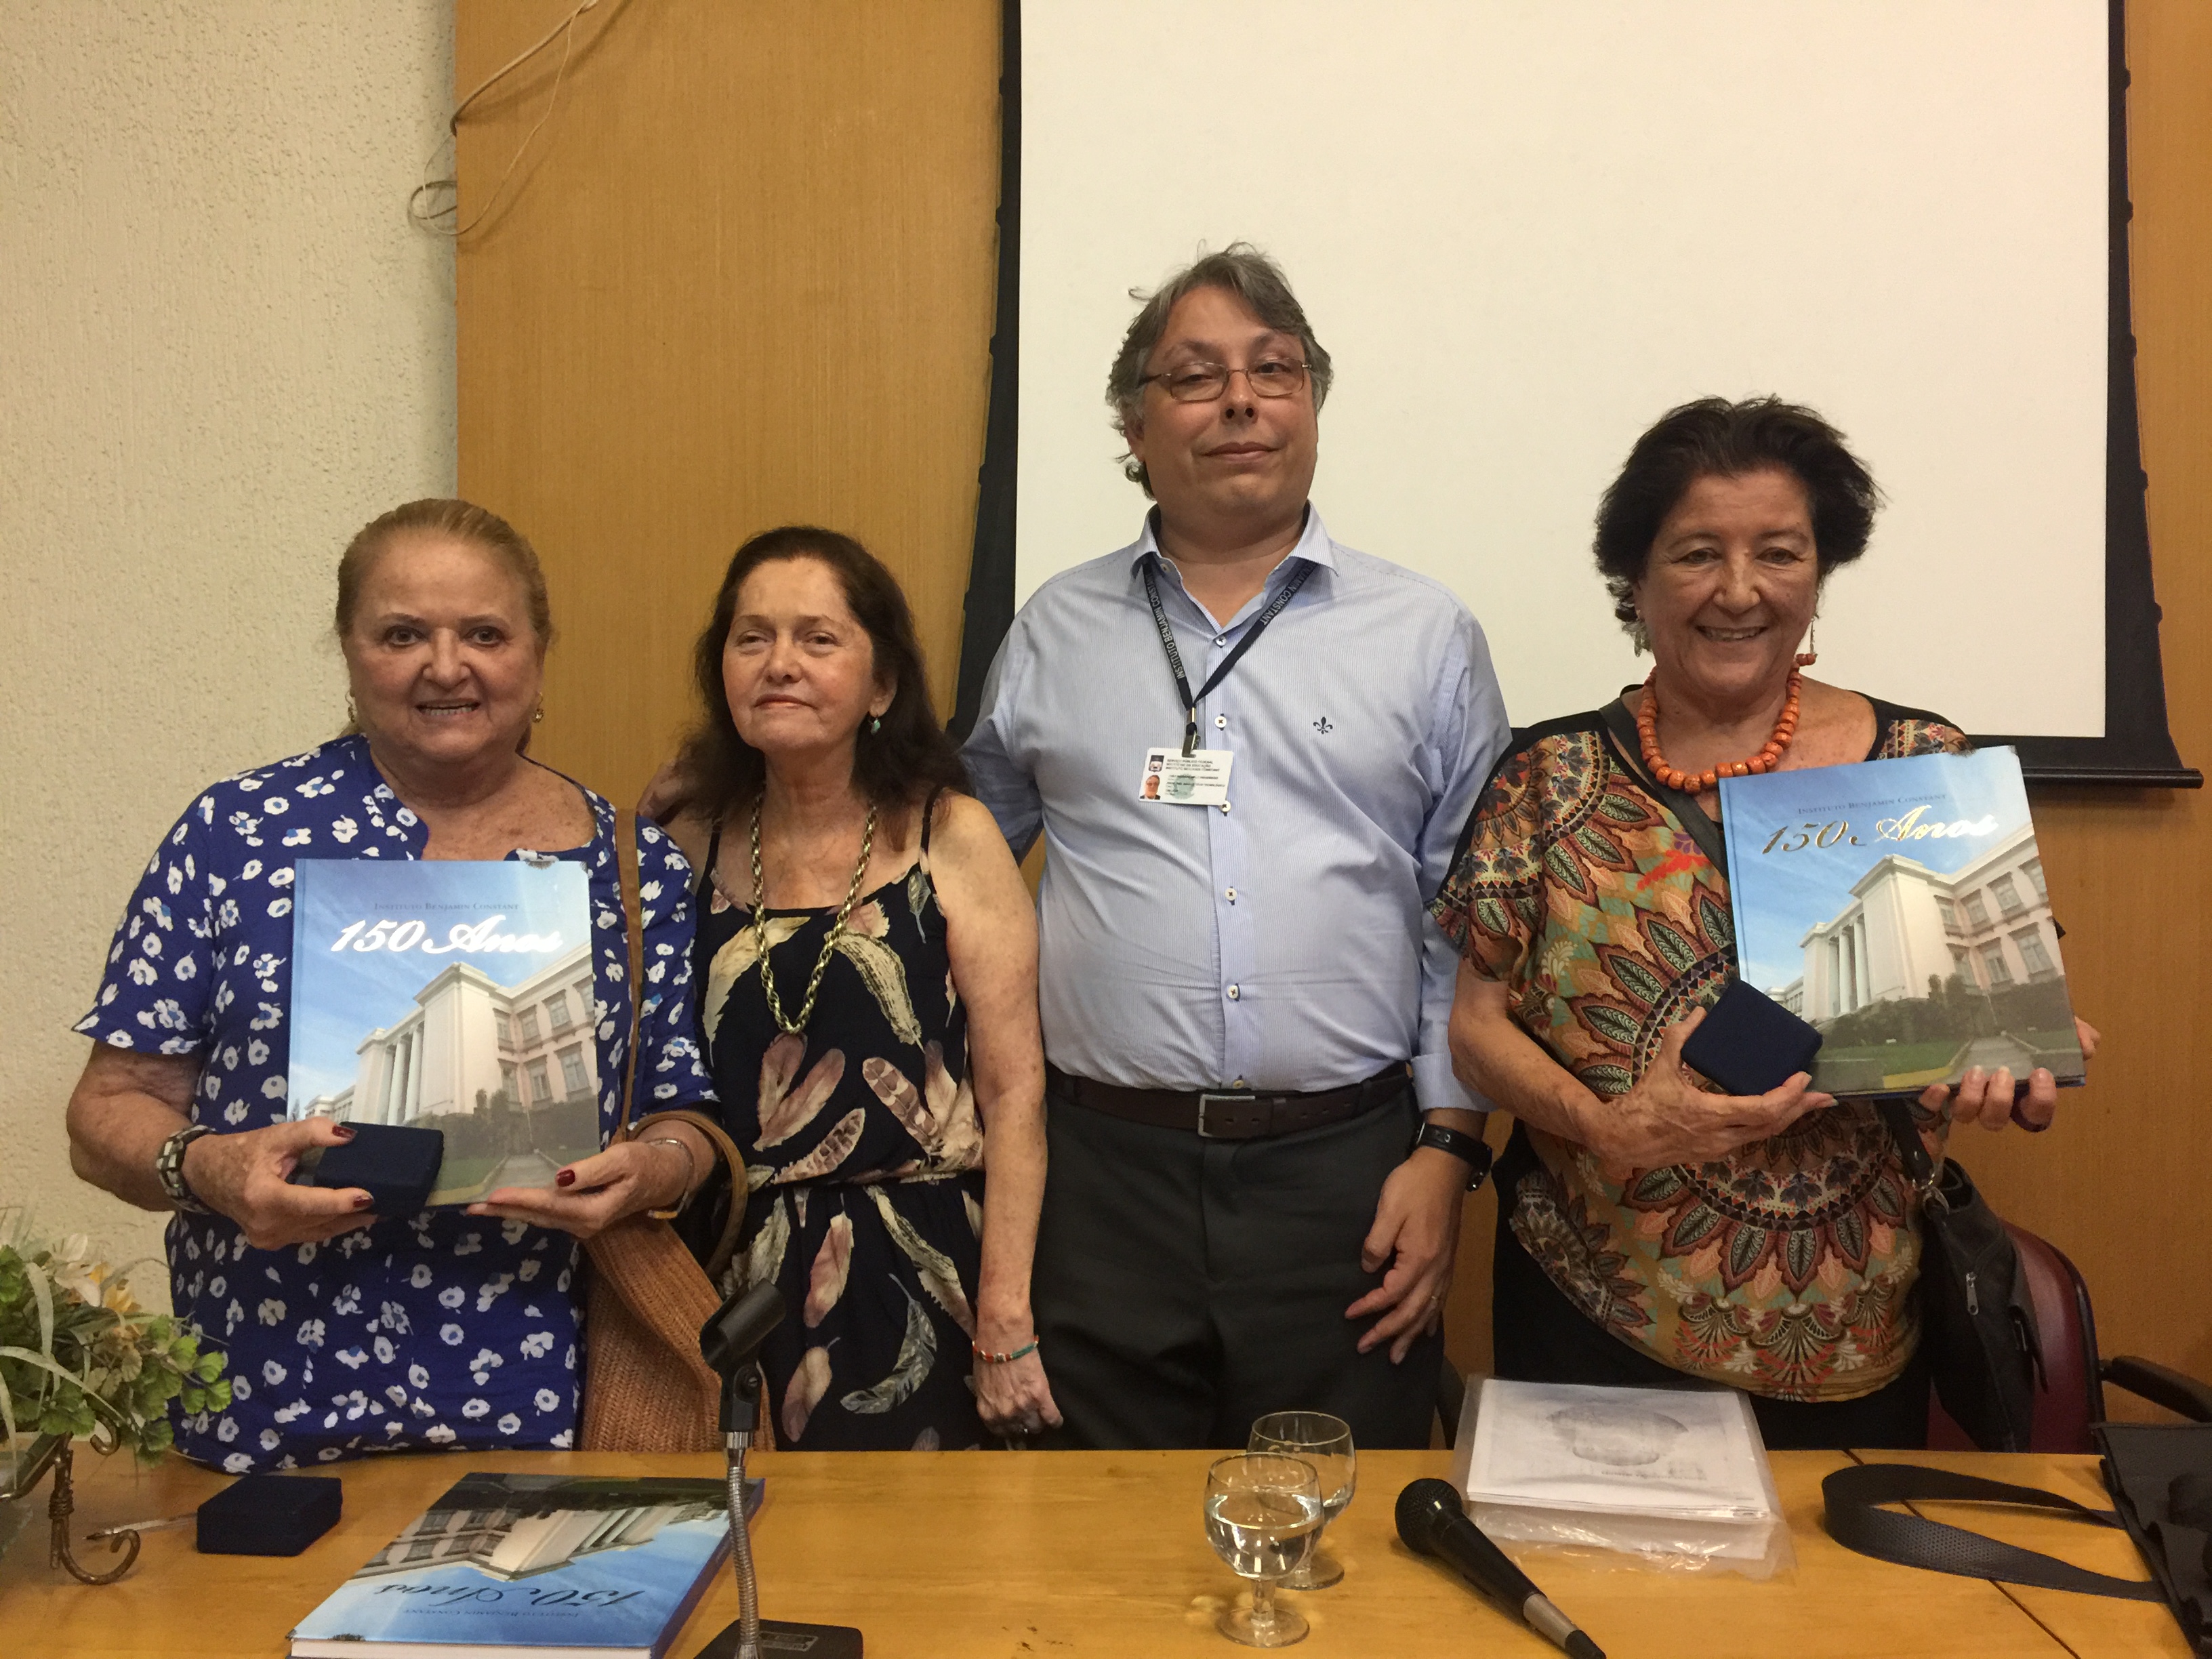 O diretor-geral do IBC, João Ricardo Melo Figueiredo, e a assessora do Gabinete Maria da Glória Almeida presentearam as descendentes de Xavier e Adélia Sigaud com o livro do 150 anos do IBC.